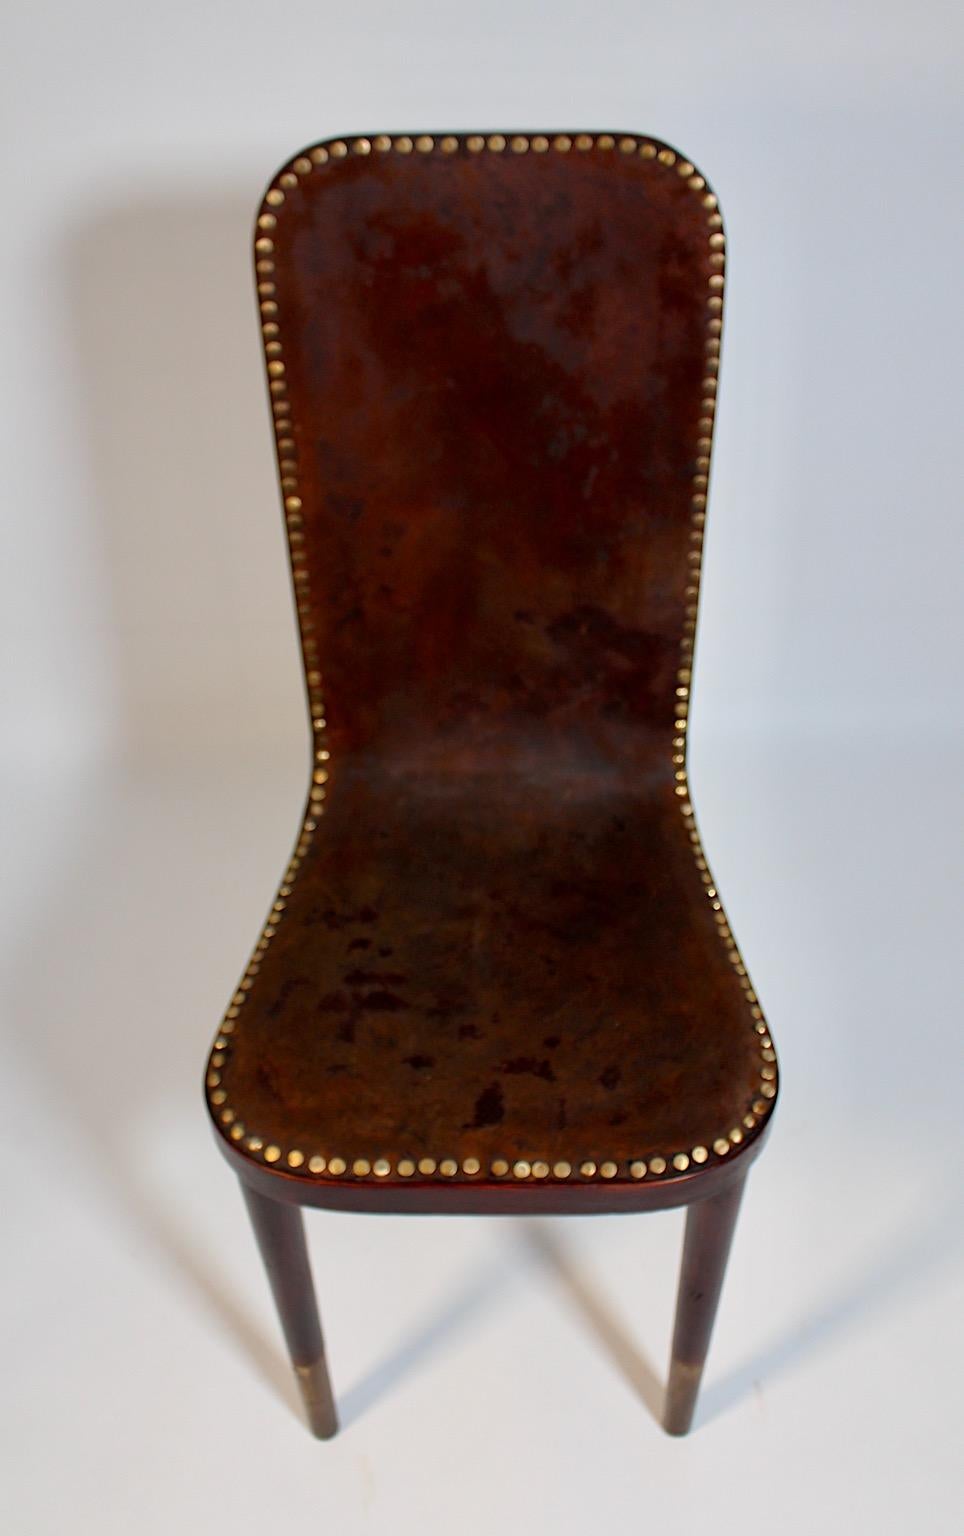 Jugendstil Vntage Authentic Side Chair Slipper Chair Schreibtischstuhl Modell Nr. 405 von Joseph Urban für Gebrüder Thonet um 1903, Wien.
Ein wunderschöner Stuhl oder Beistellstuhl aus gebeizter Buche und mit Leder bezogener Sitzfläche und